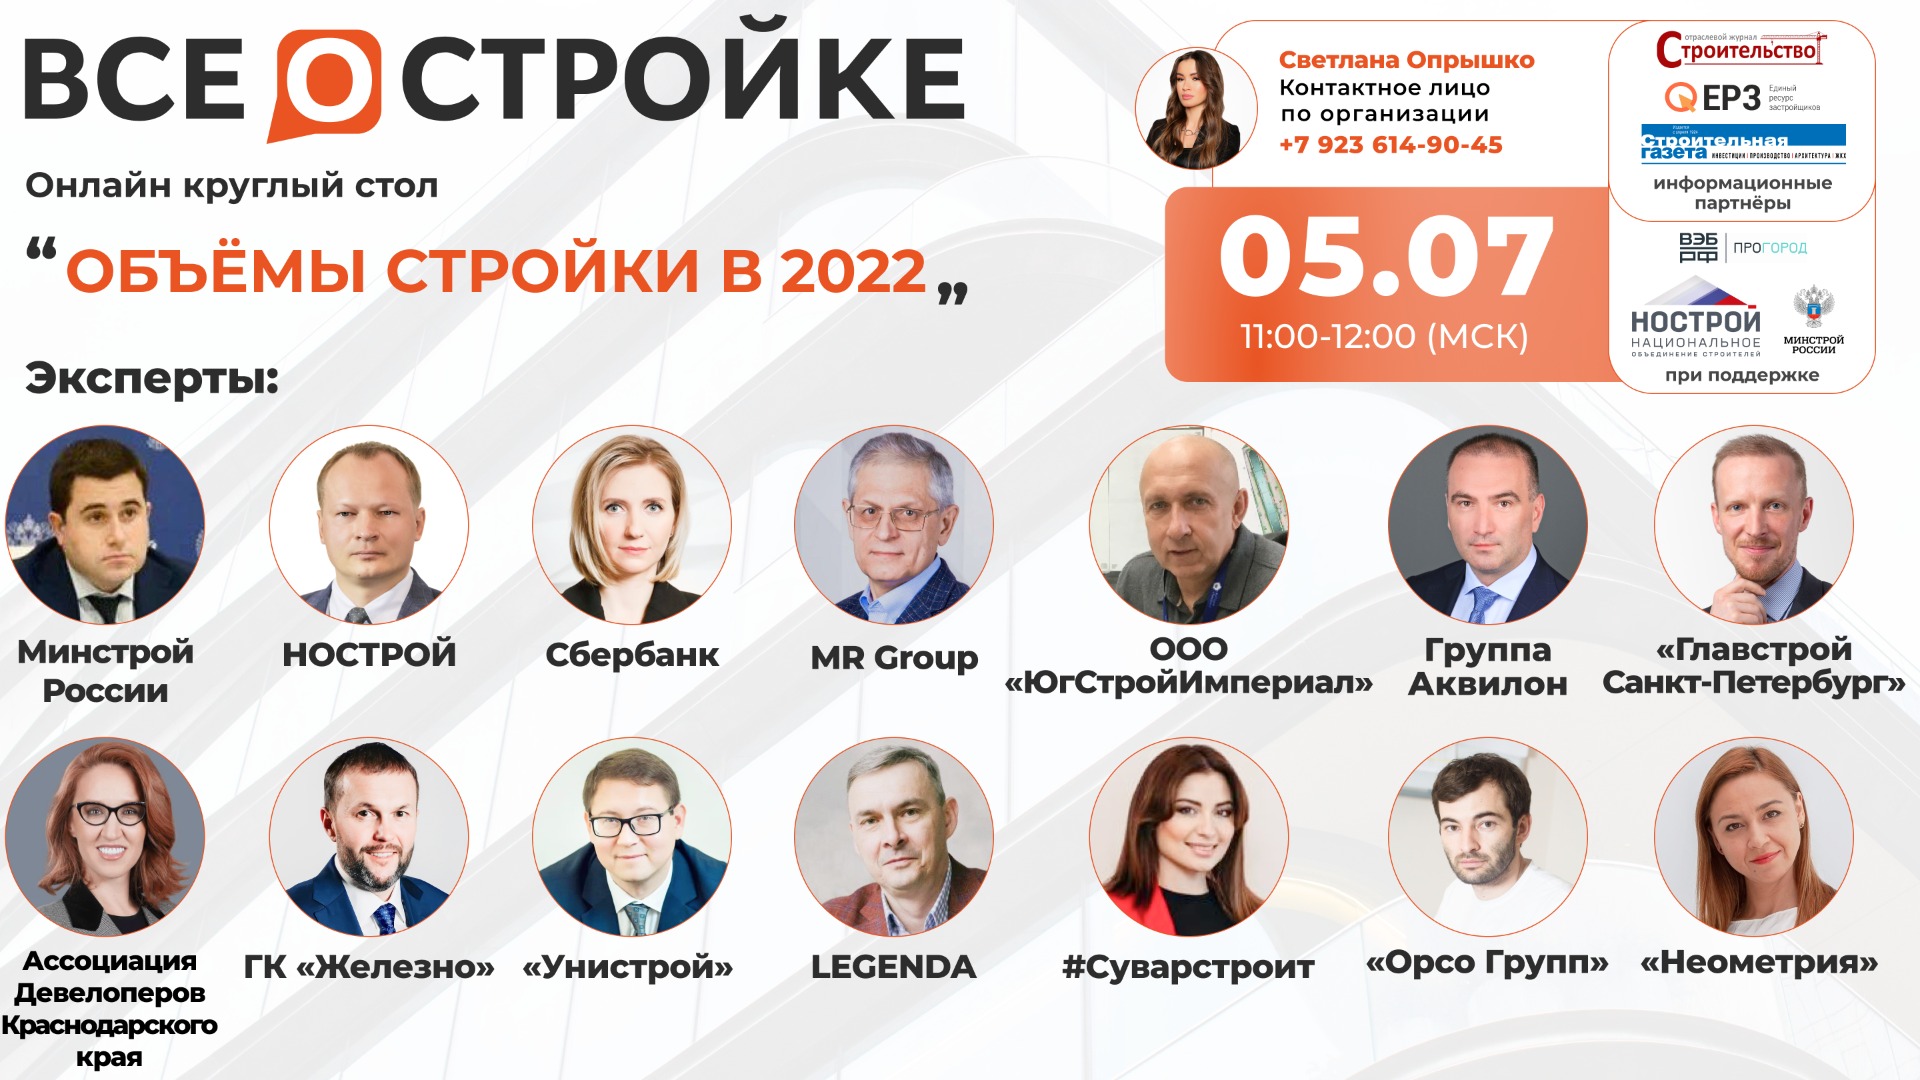 Круглый стол на тему: «Объёмы стройки в 2022» 5.07 в 11:00 (МСК)